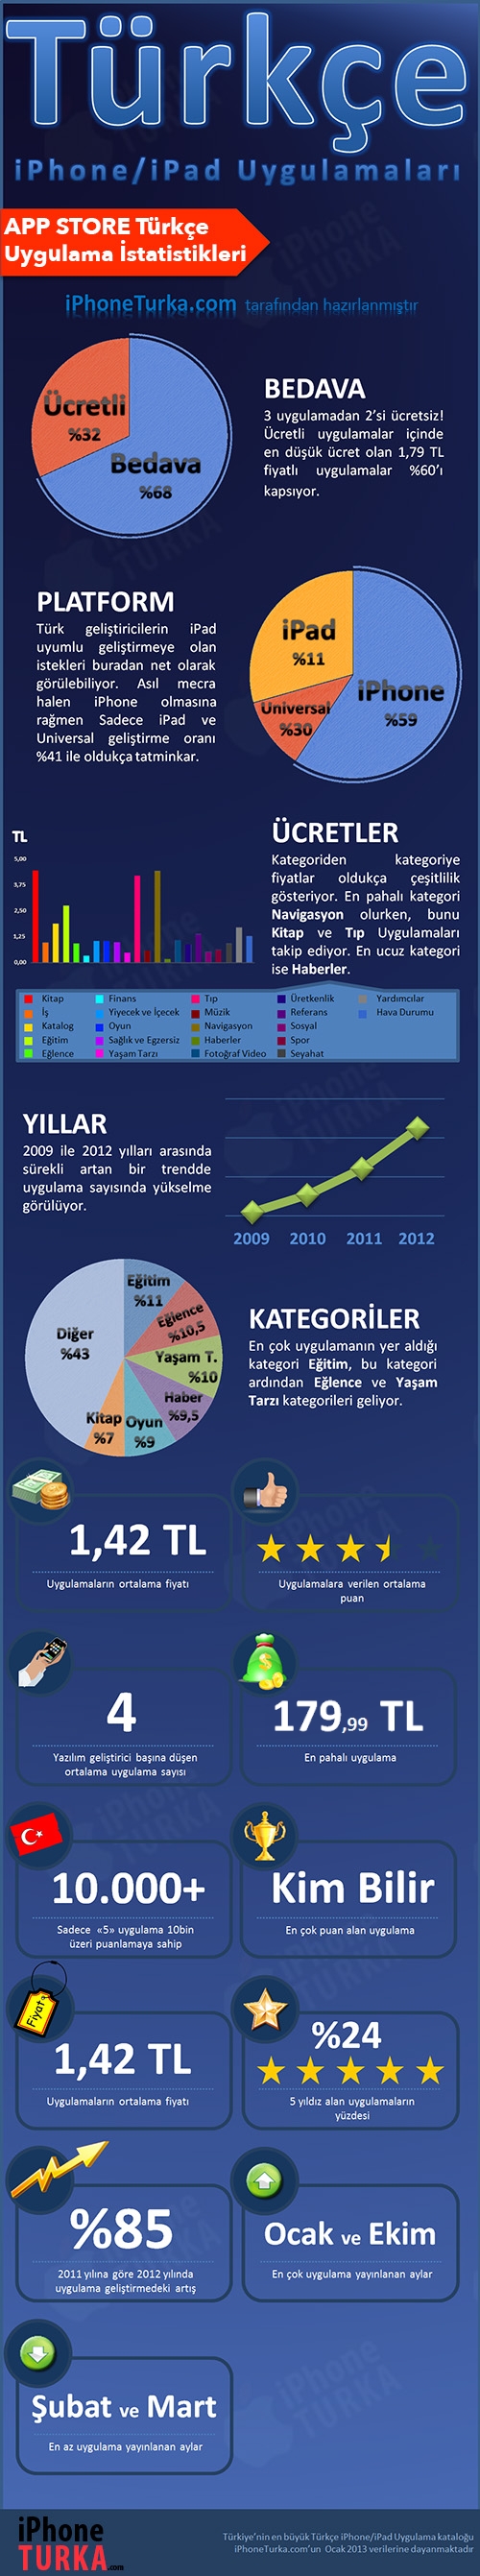 turkce-uygulama-istatistikleri